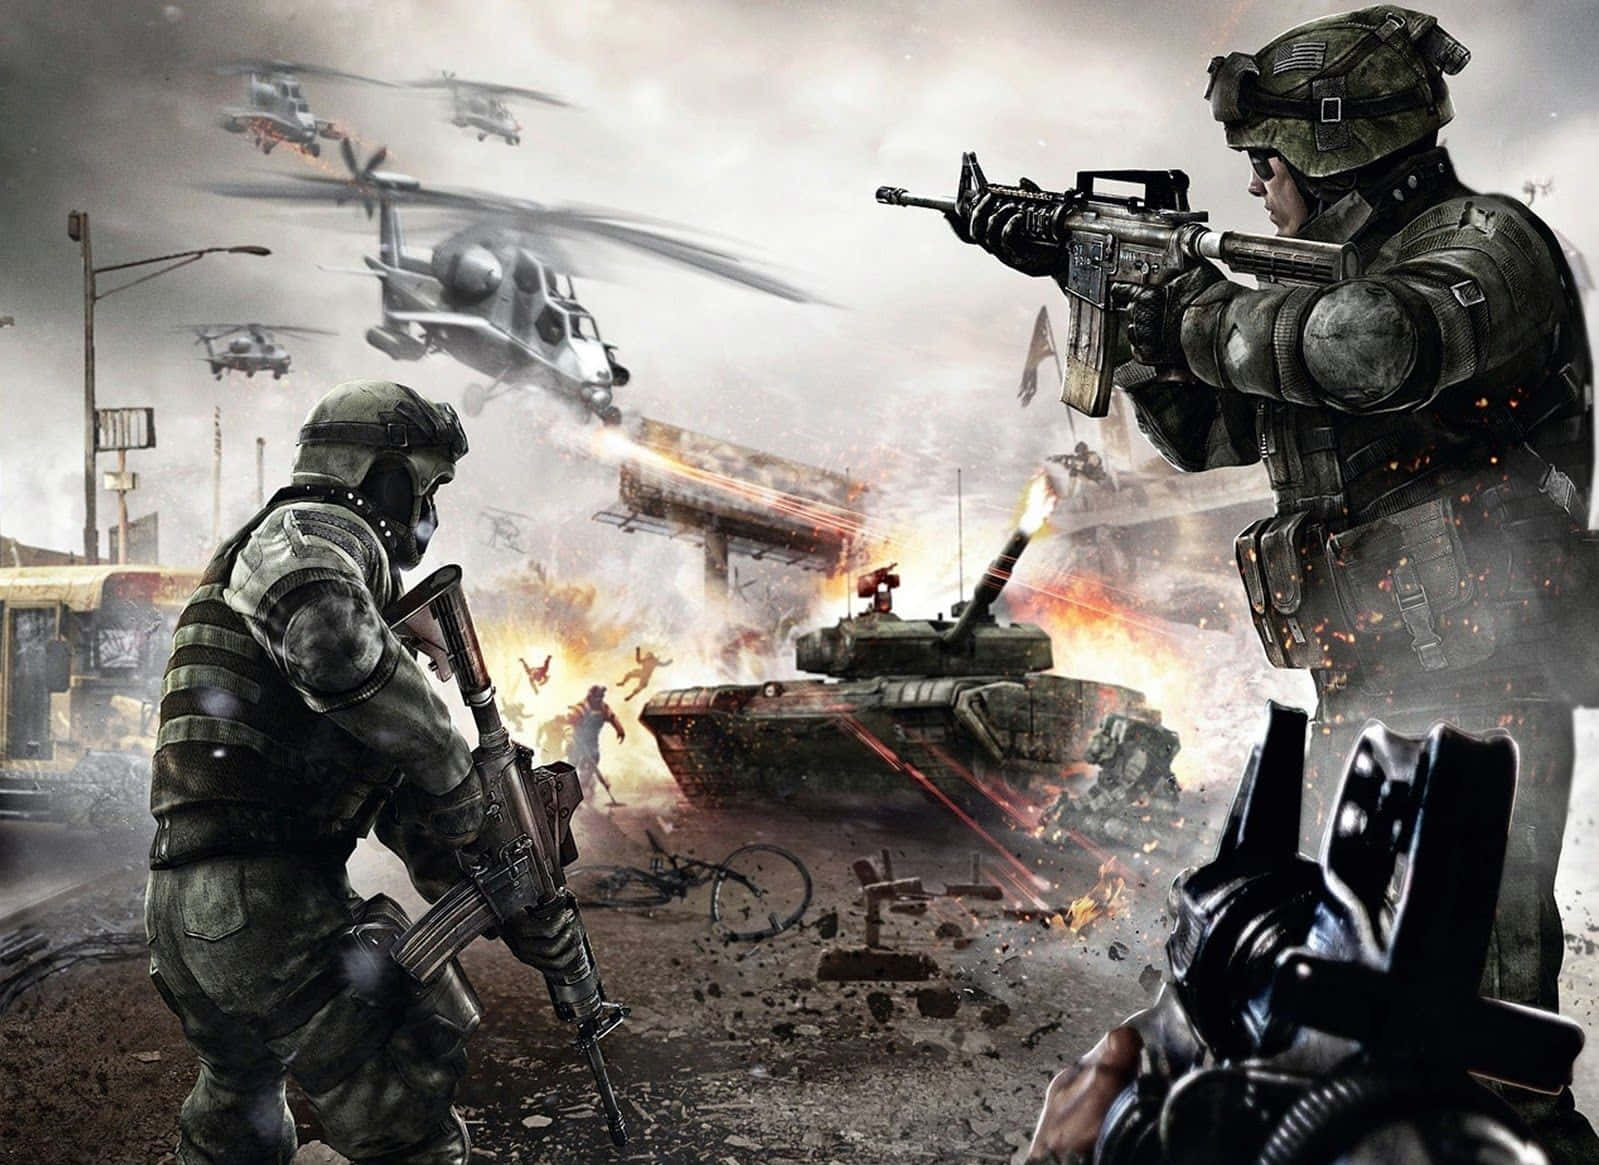 Intense Action War Games Wallpaper